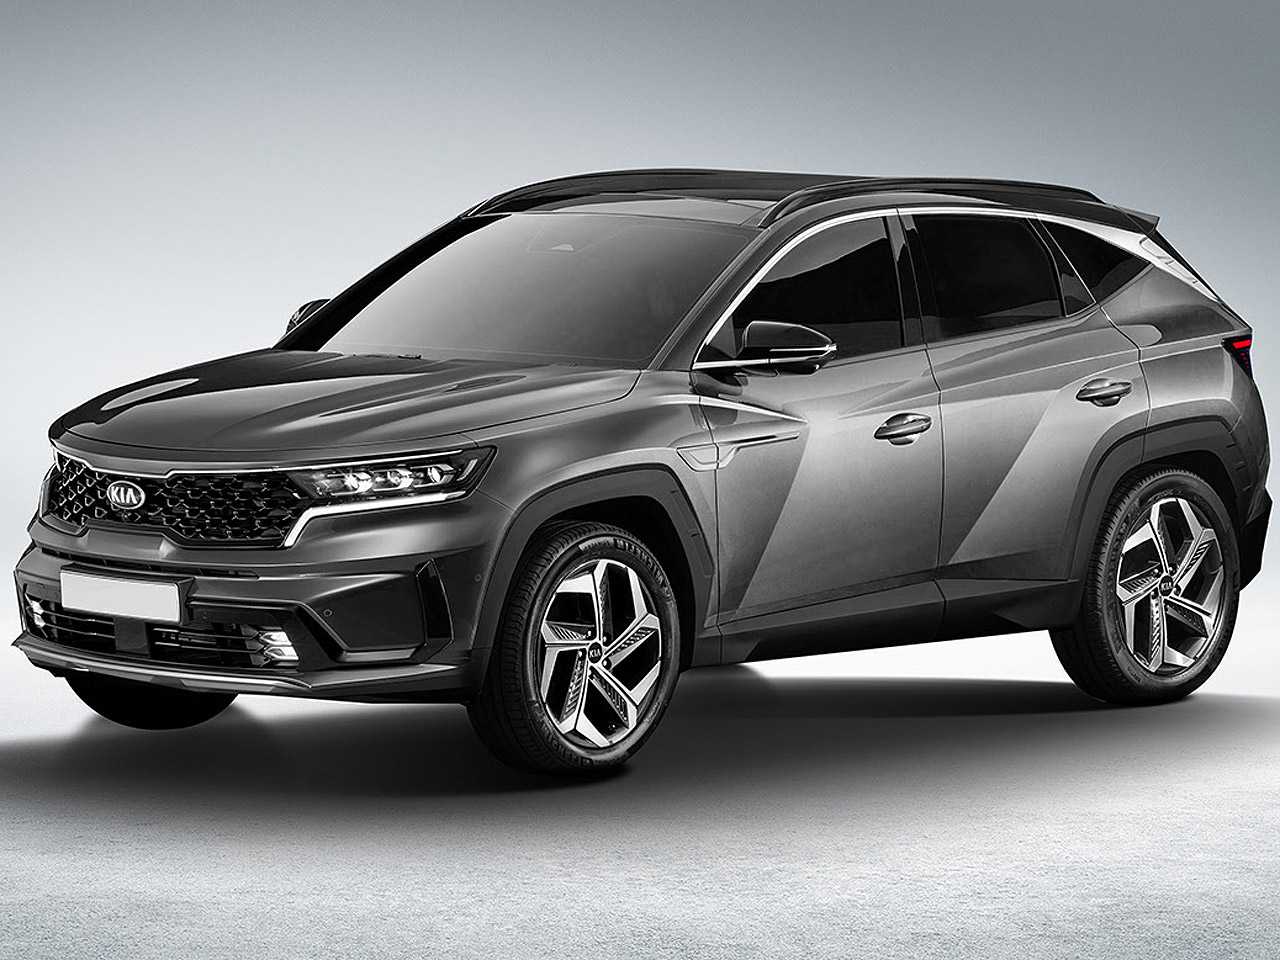 Novo Kia Sportage estreia em 2021 com elementos do Hyundai